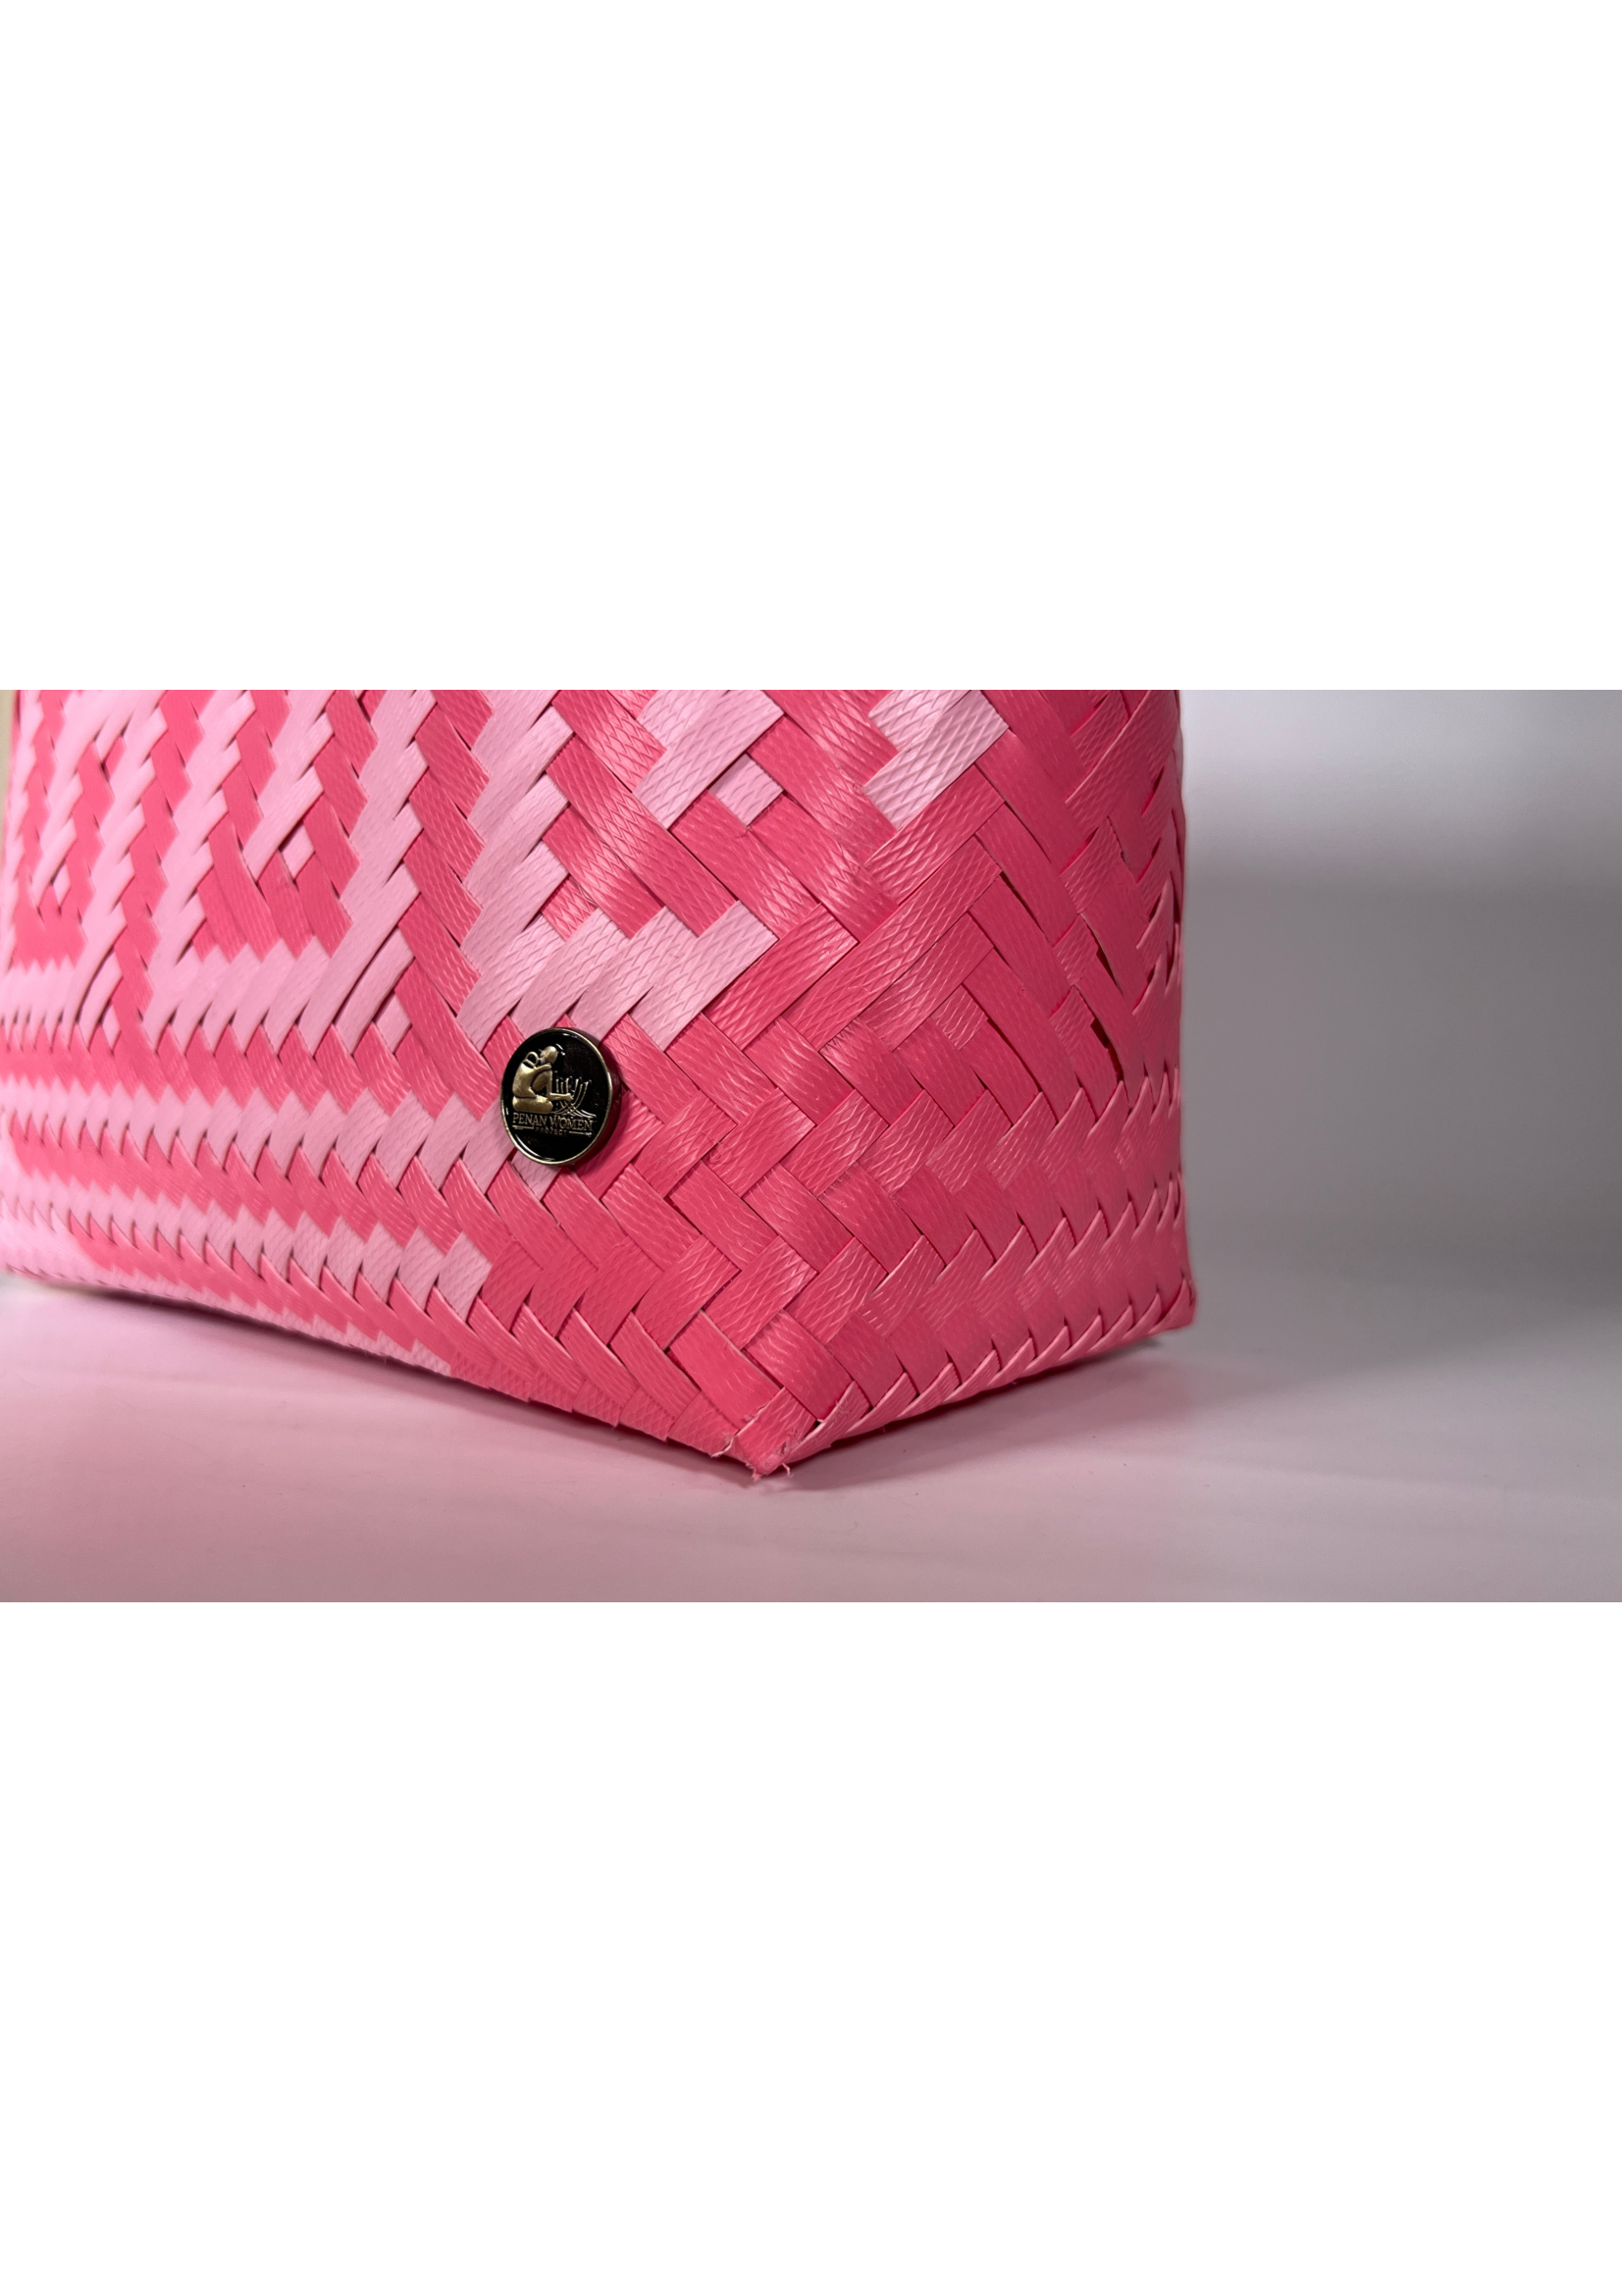 Pink & Carnation Patterned Bag